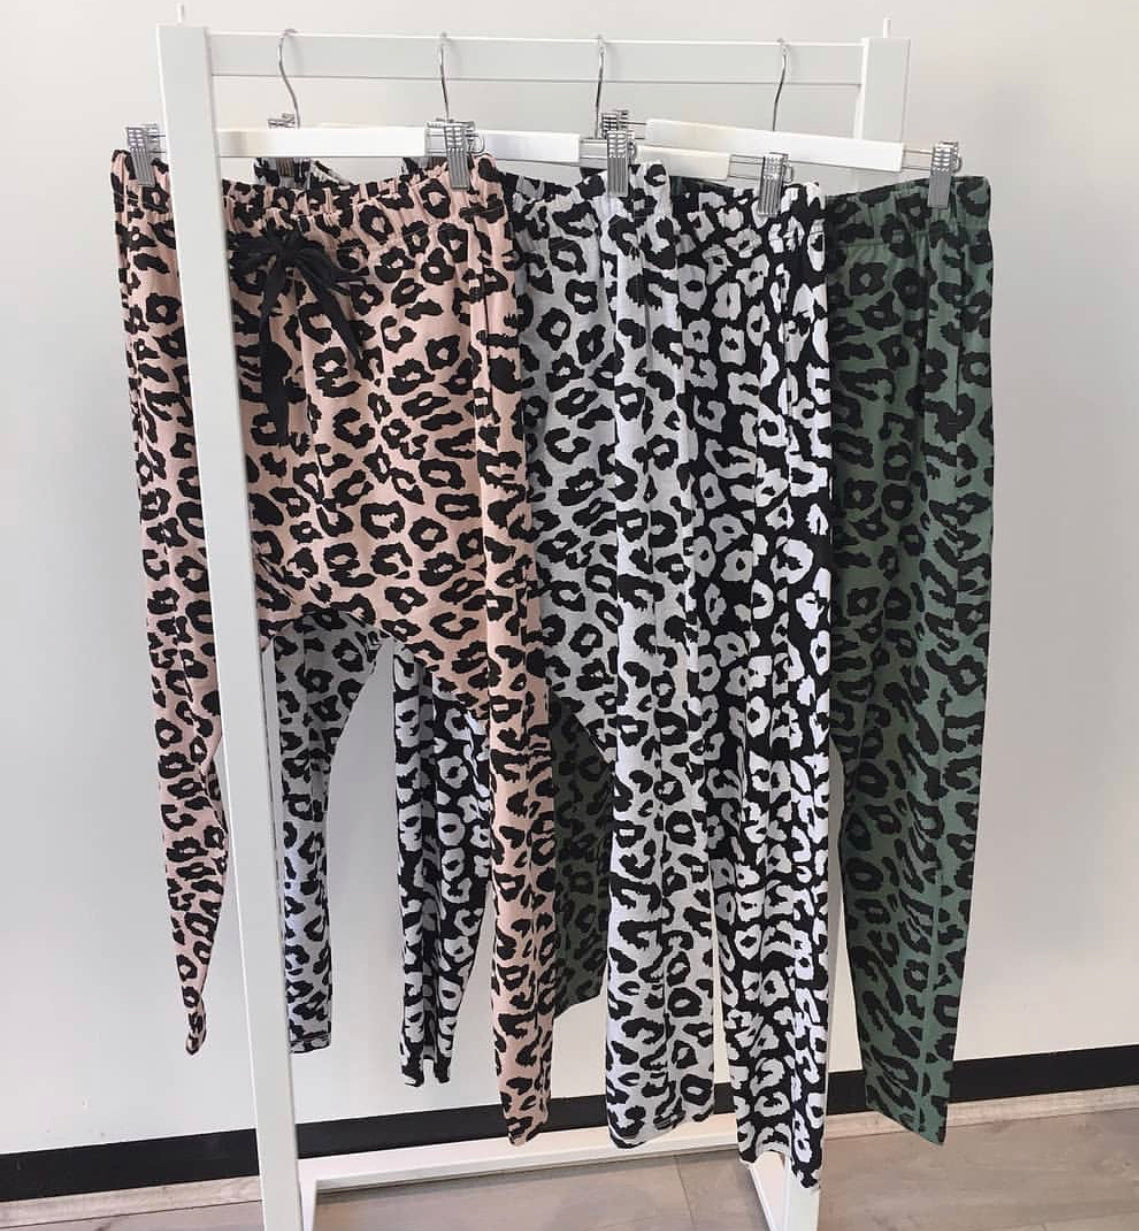 3 Ways to Wear Leopard Pants — Lauren Toews